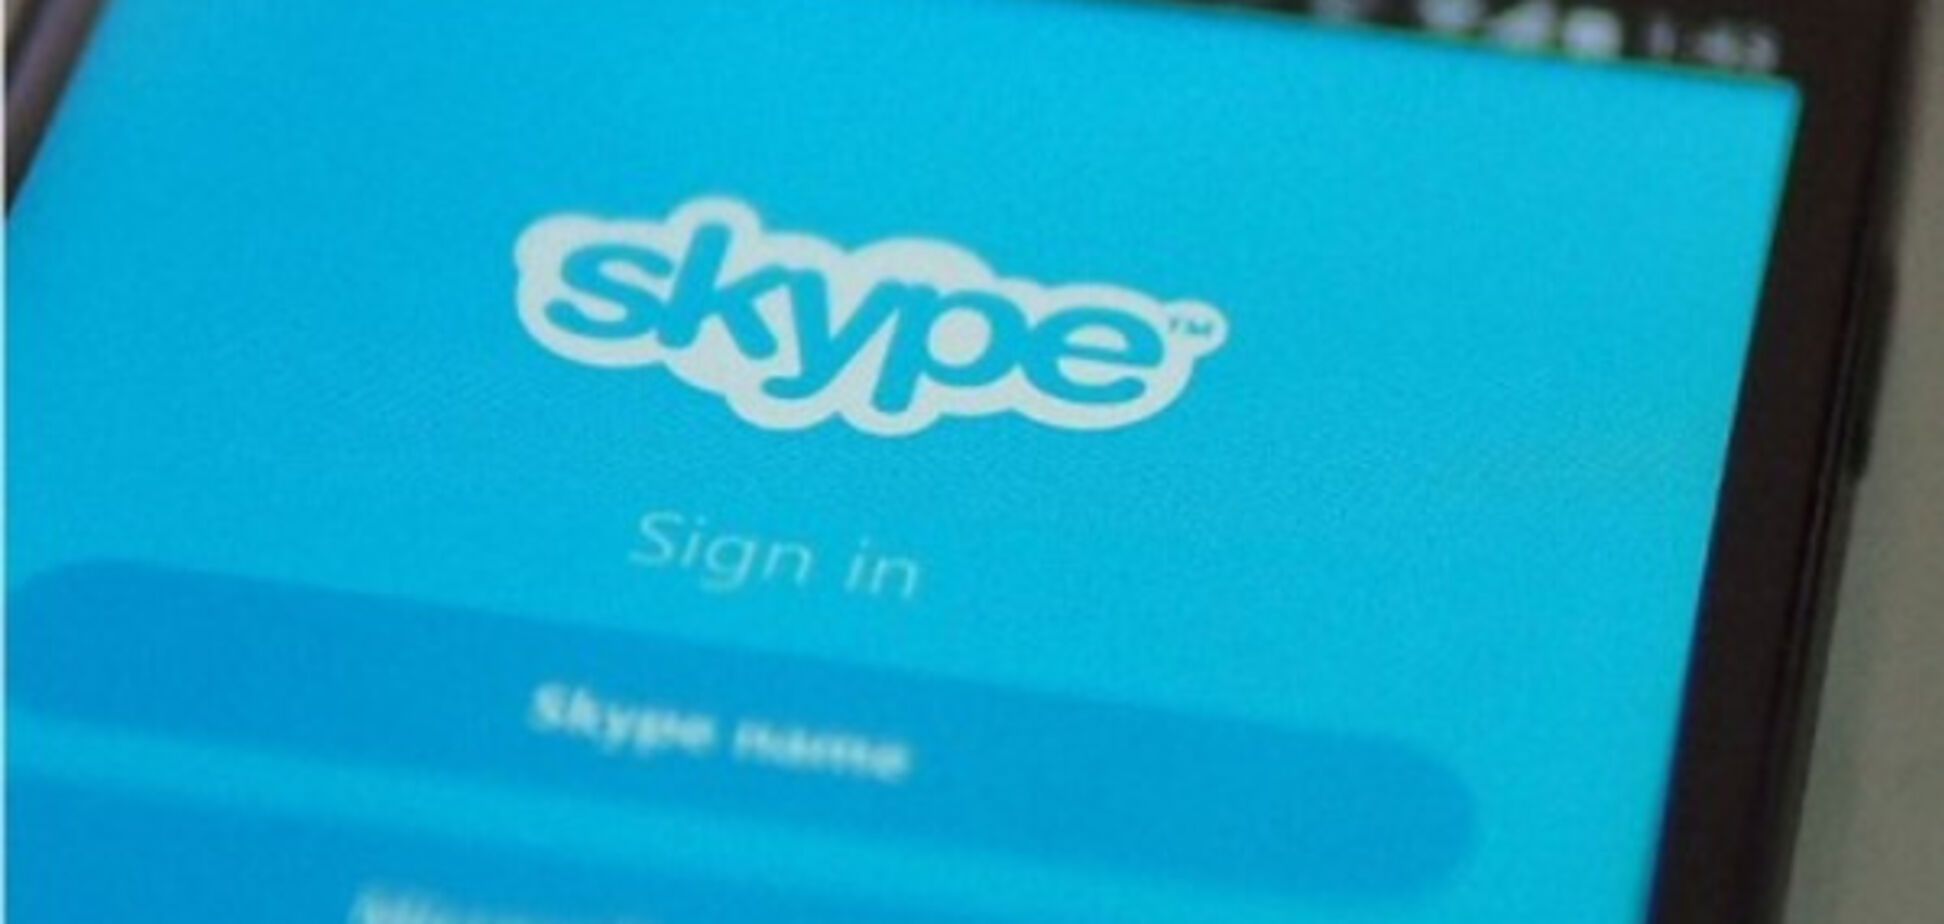 Технічний прогрес: позачергові виконкоми в Луцьку пропонують проводити у Skype